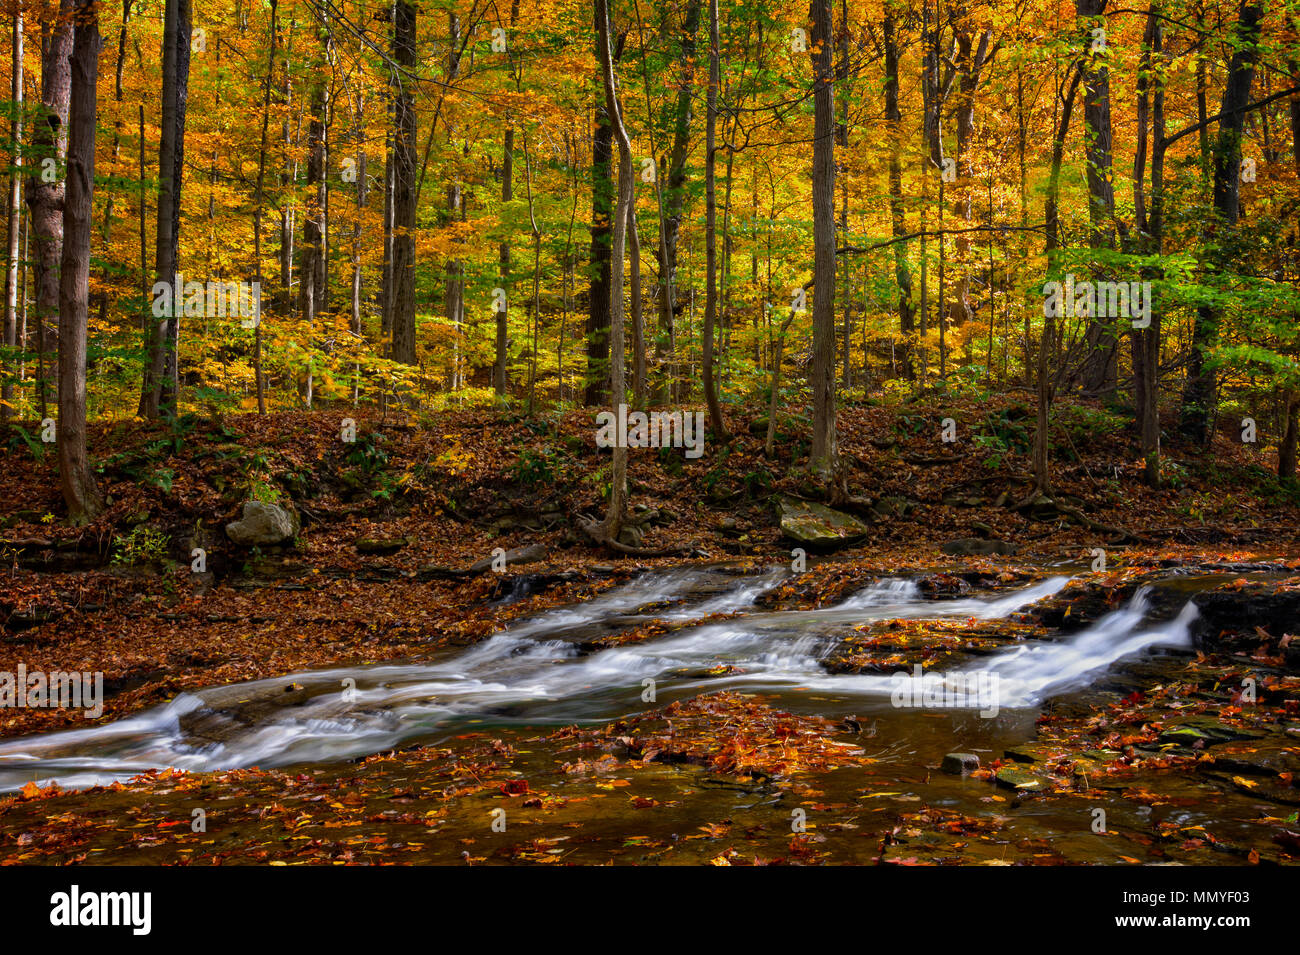 Une petite cascade sur Brandywine Creek dans le parc national de Cuyahoga Valley dans l'Ohio. Vu ici à l'automne avec des feuilles mortes. Banque D'Images